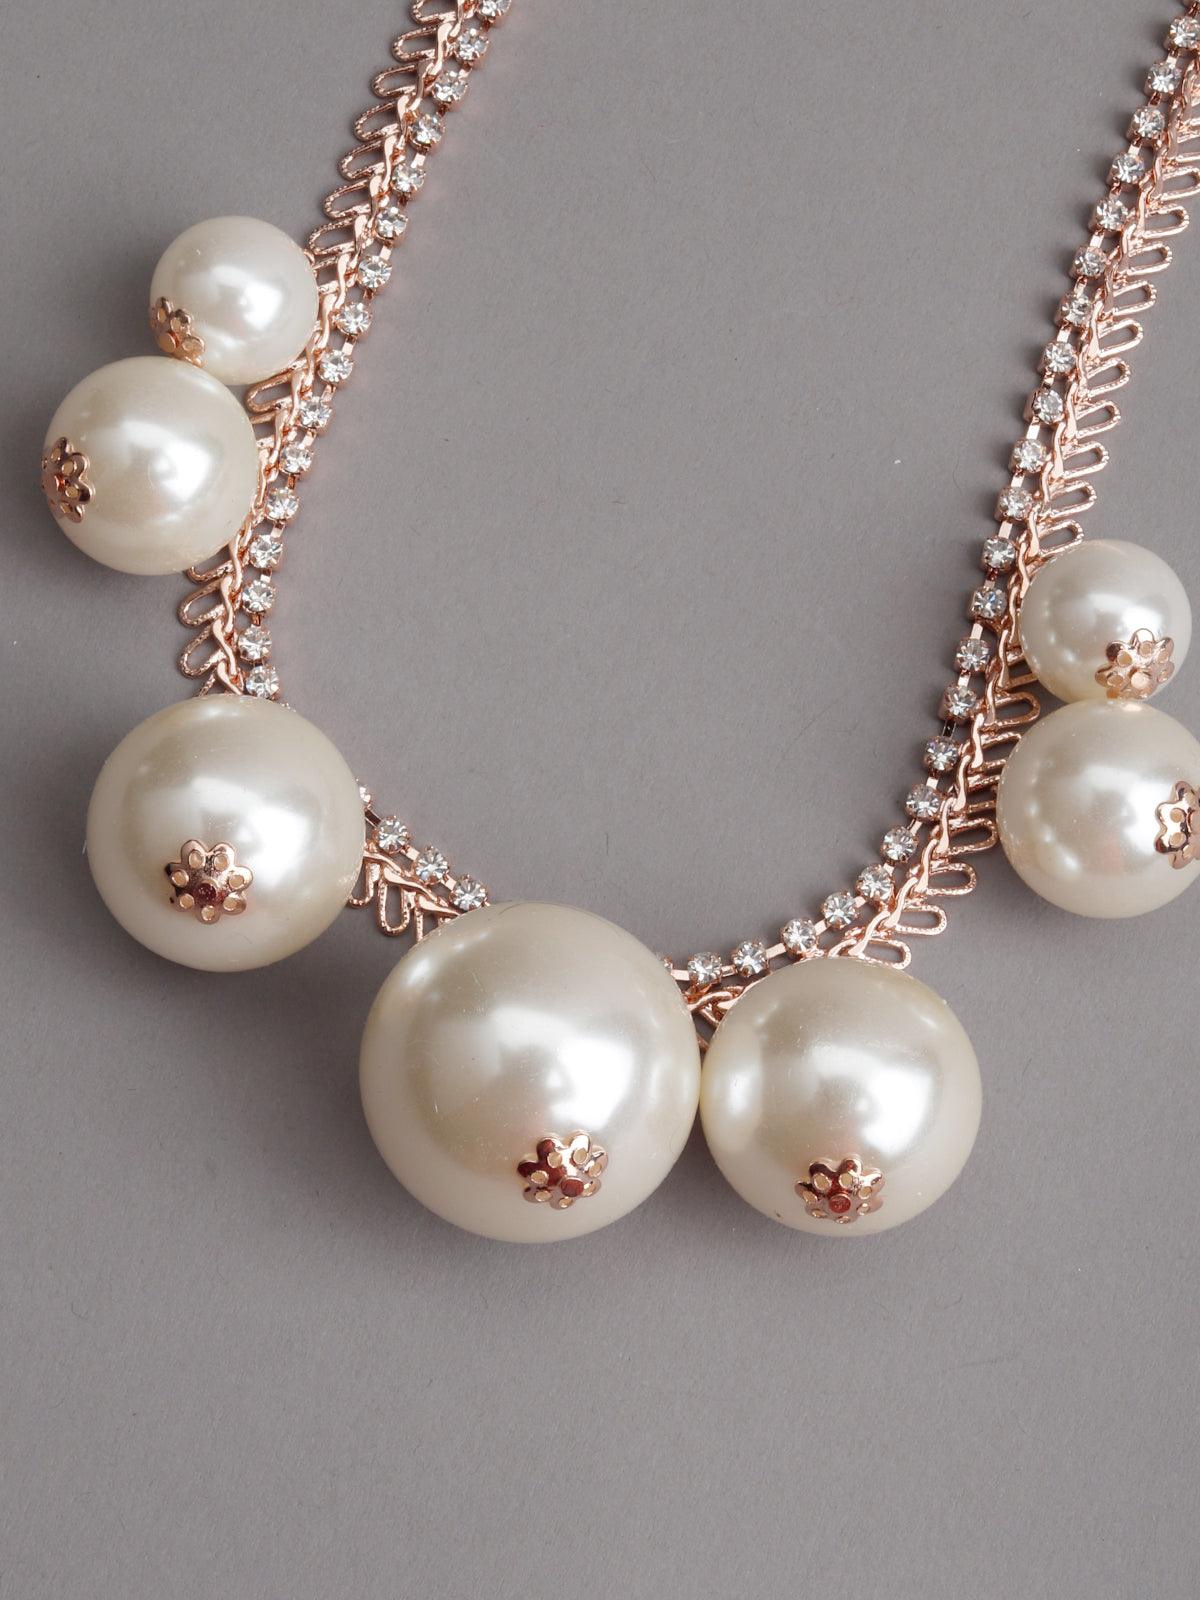 Adorable Crystal Charm Necklace - Odette